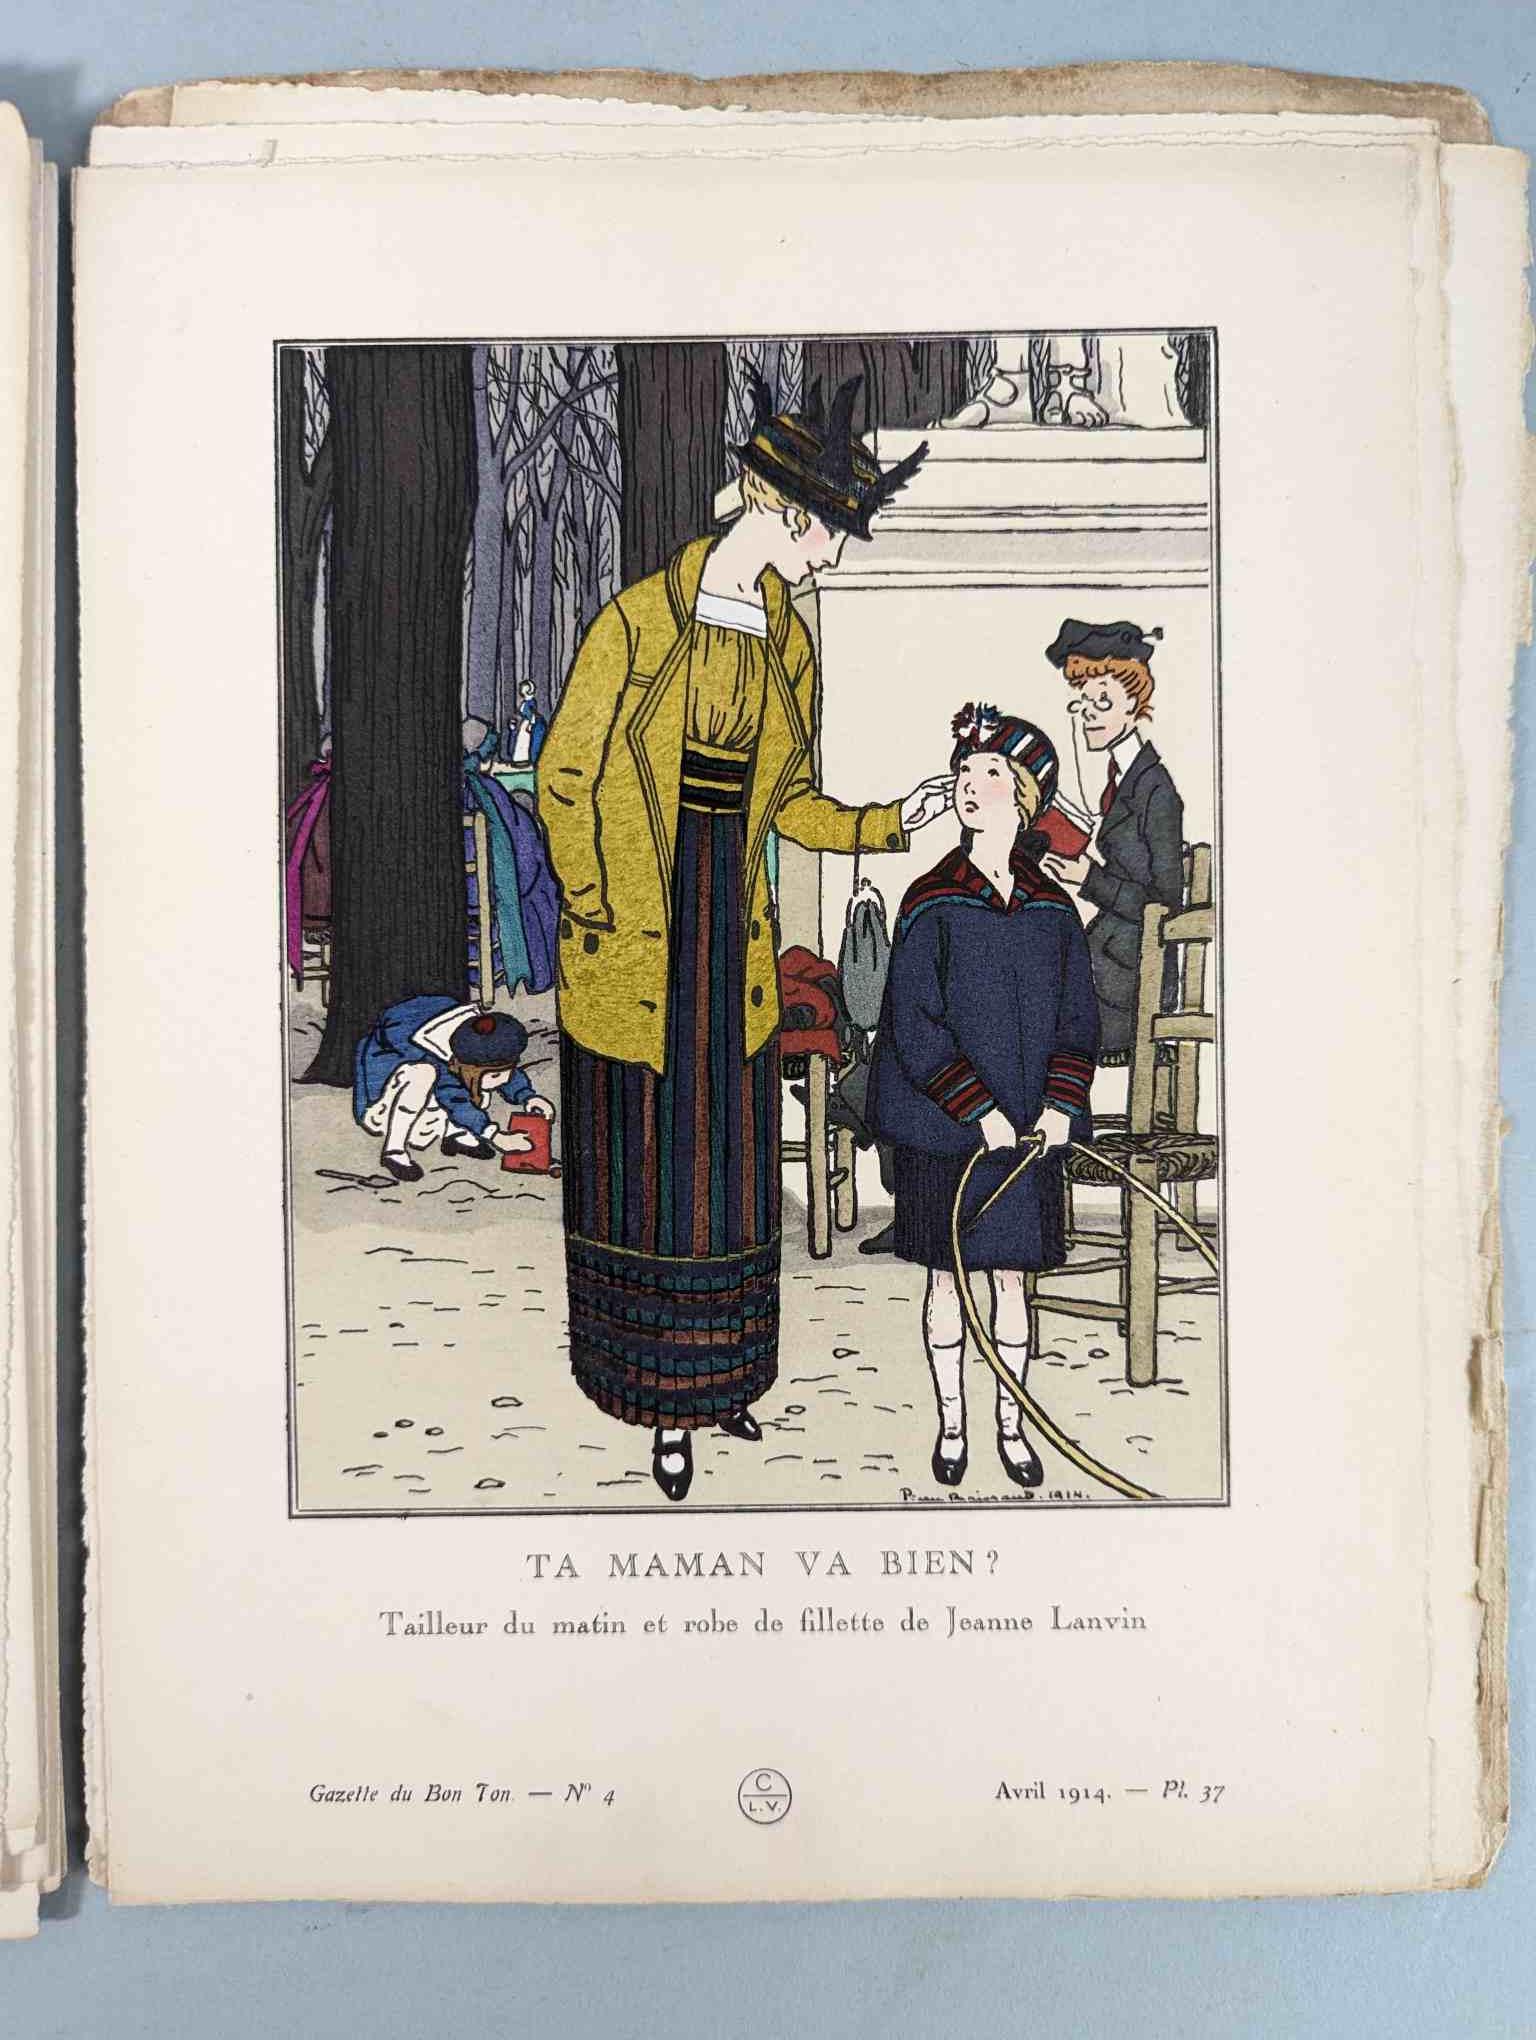 FASHION. VOGEL, Lucien. GAZETTE DU BON TON: Art-Modes & Frivolités, Paris 1913-14, 4 vol. - Image 36 of 54